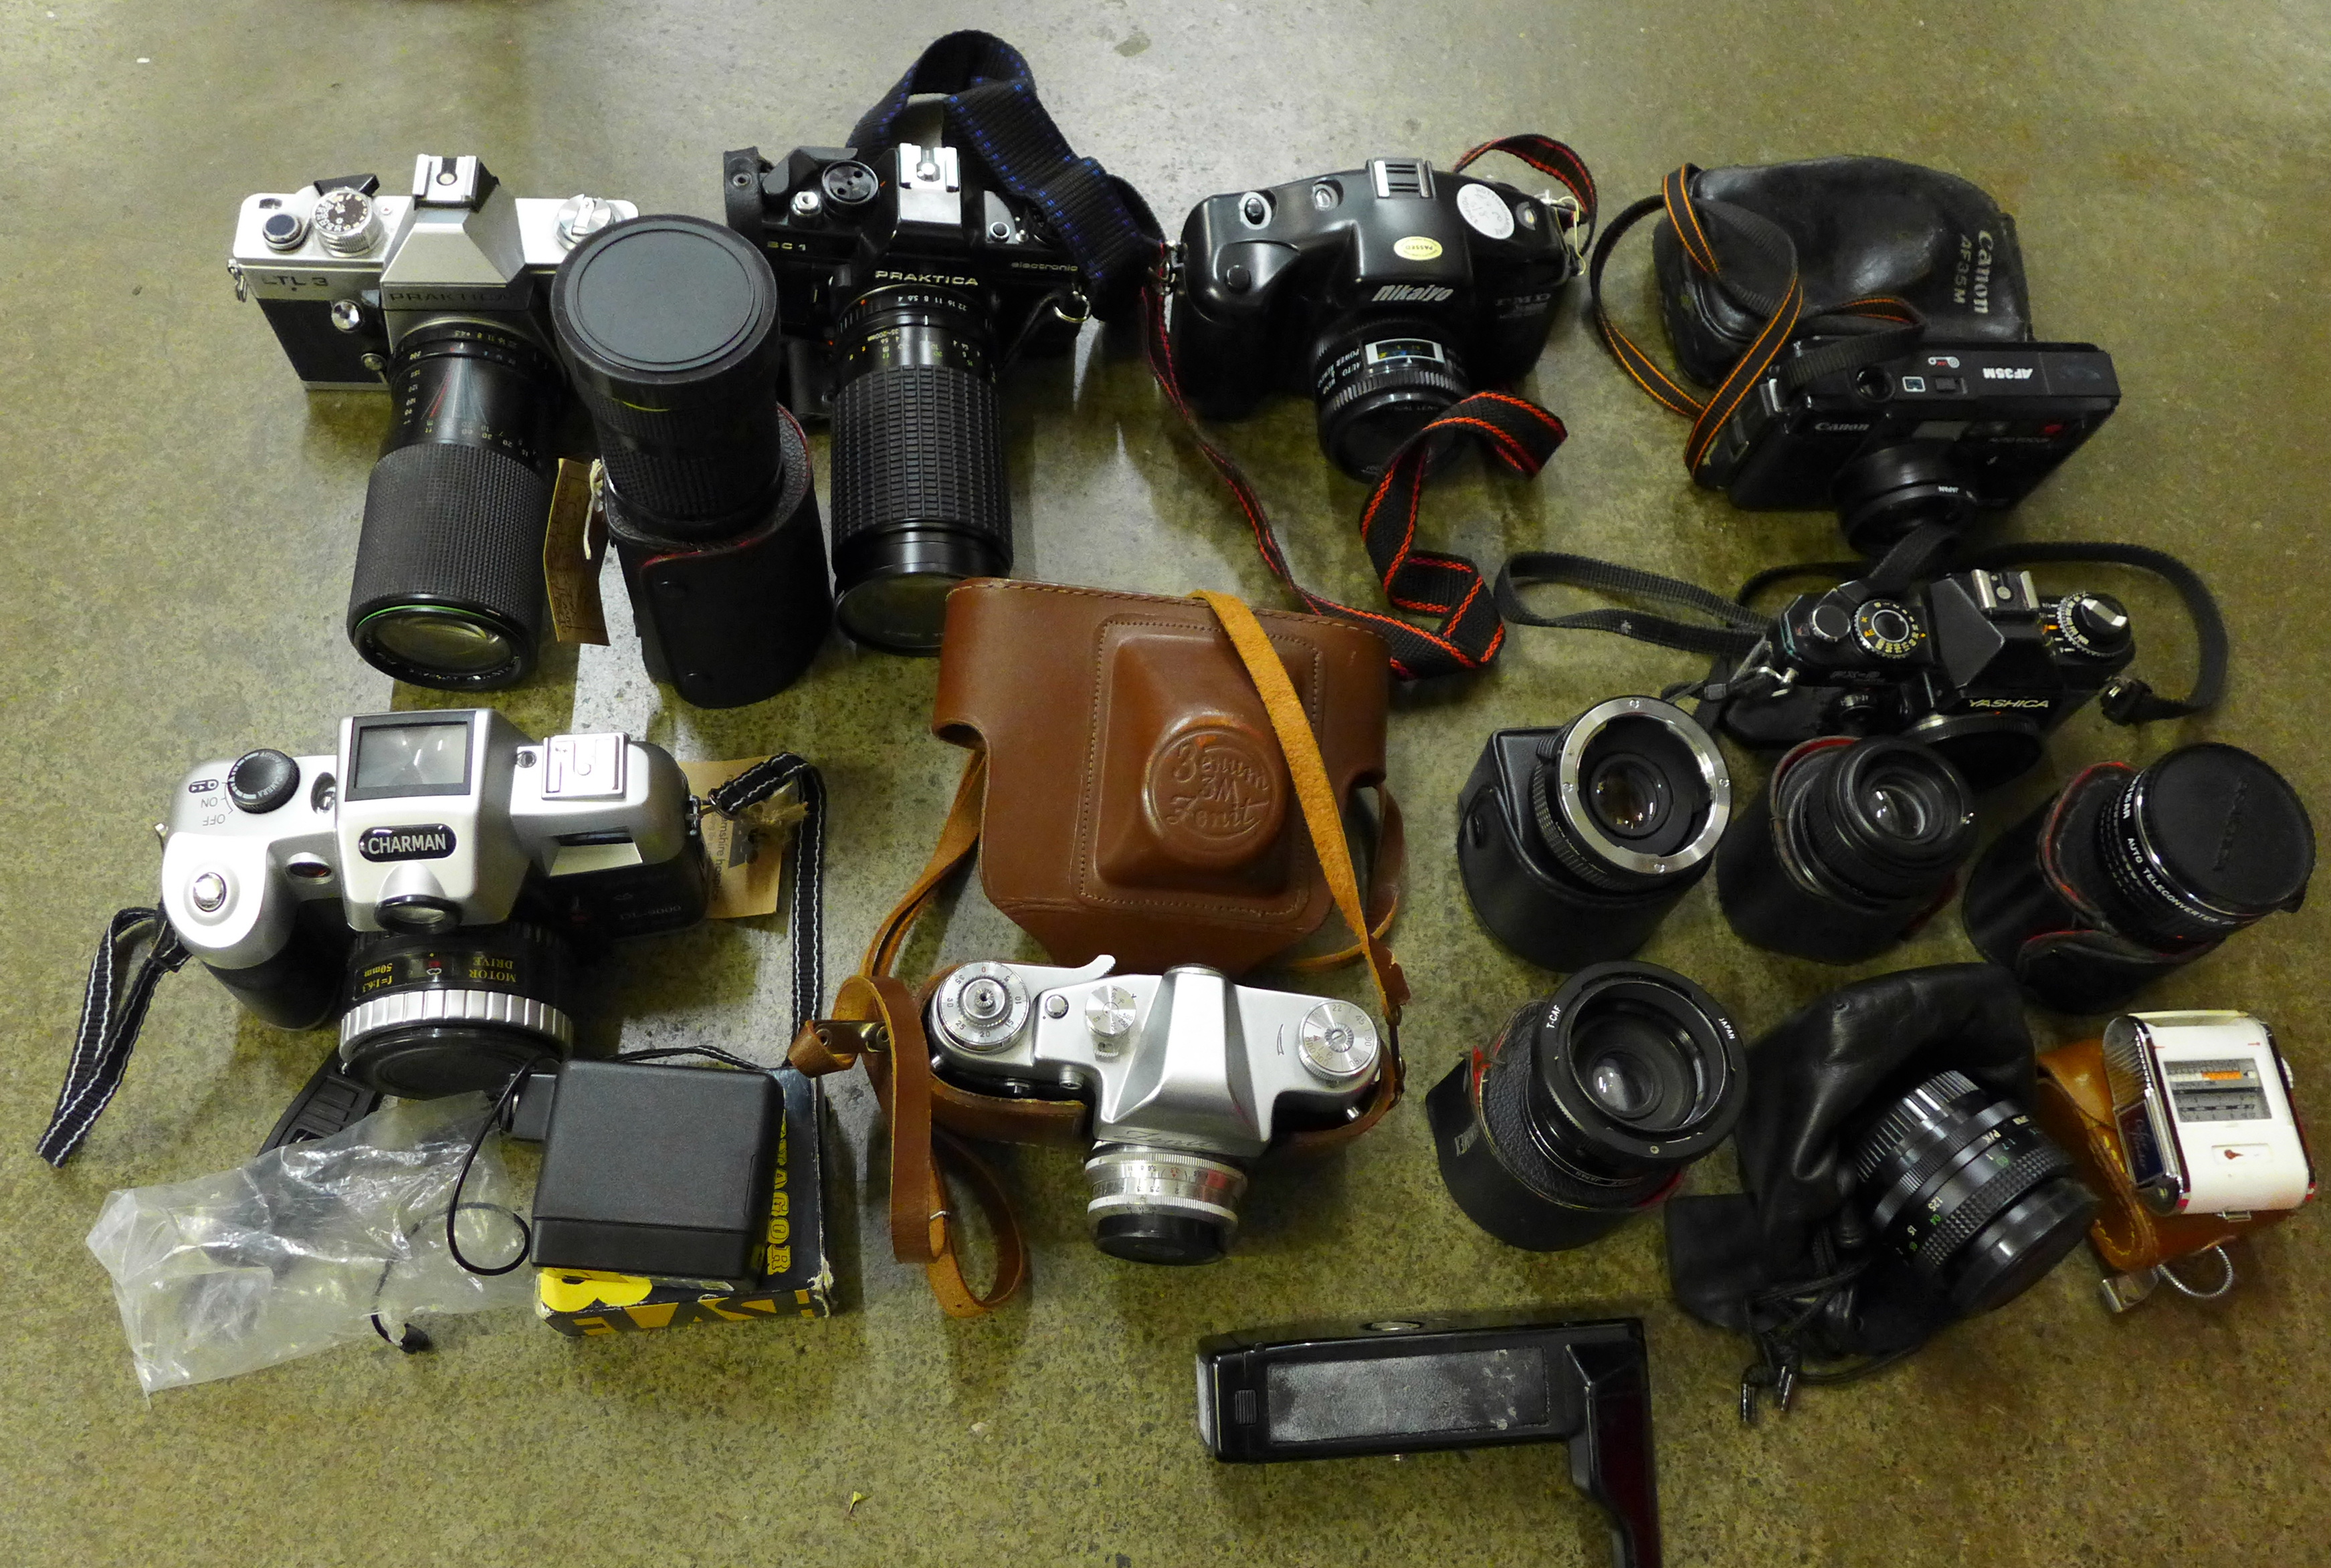 Assorted 35mm film cameras; Yashica, Praktica, Charman, Canon, etc.